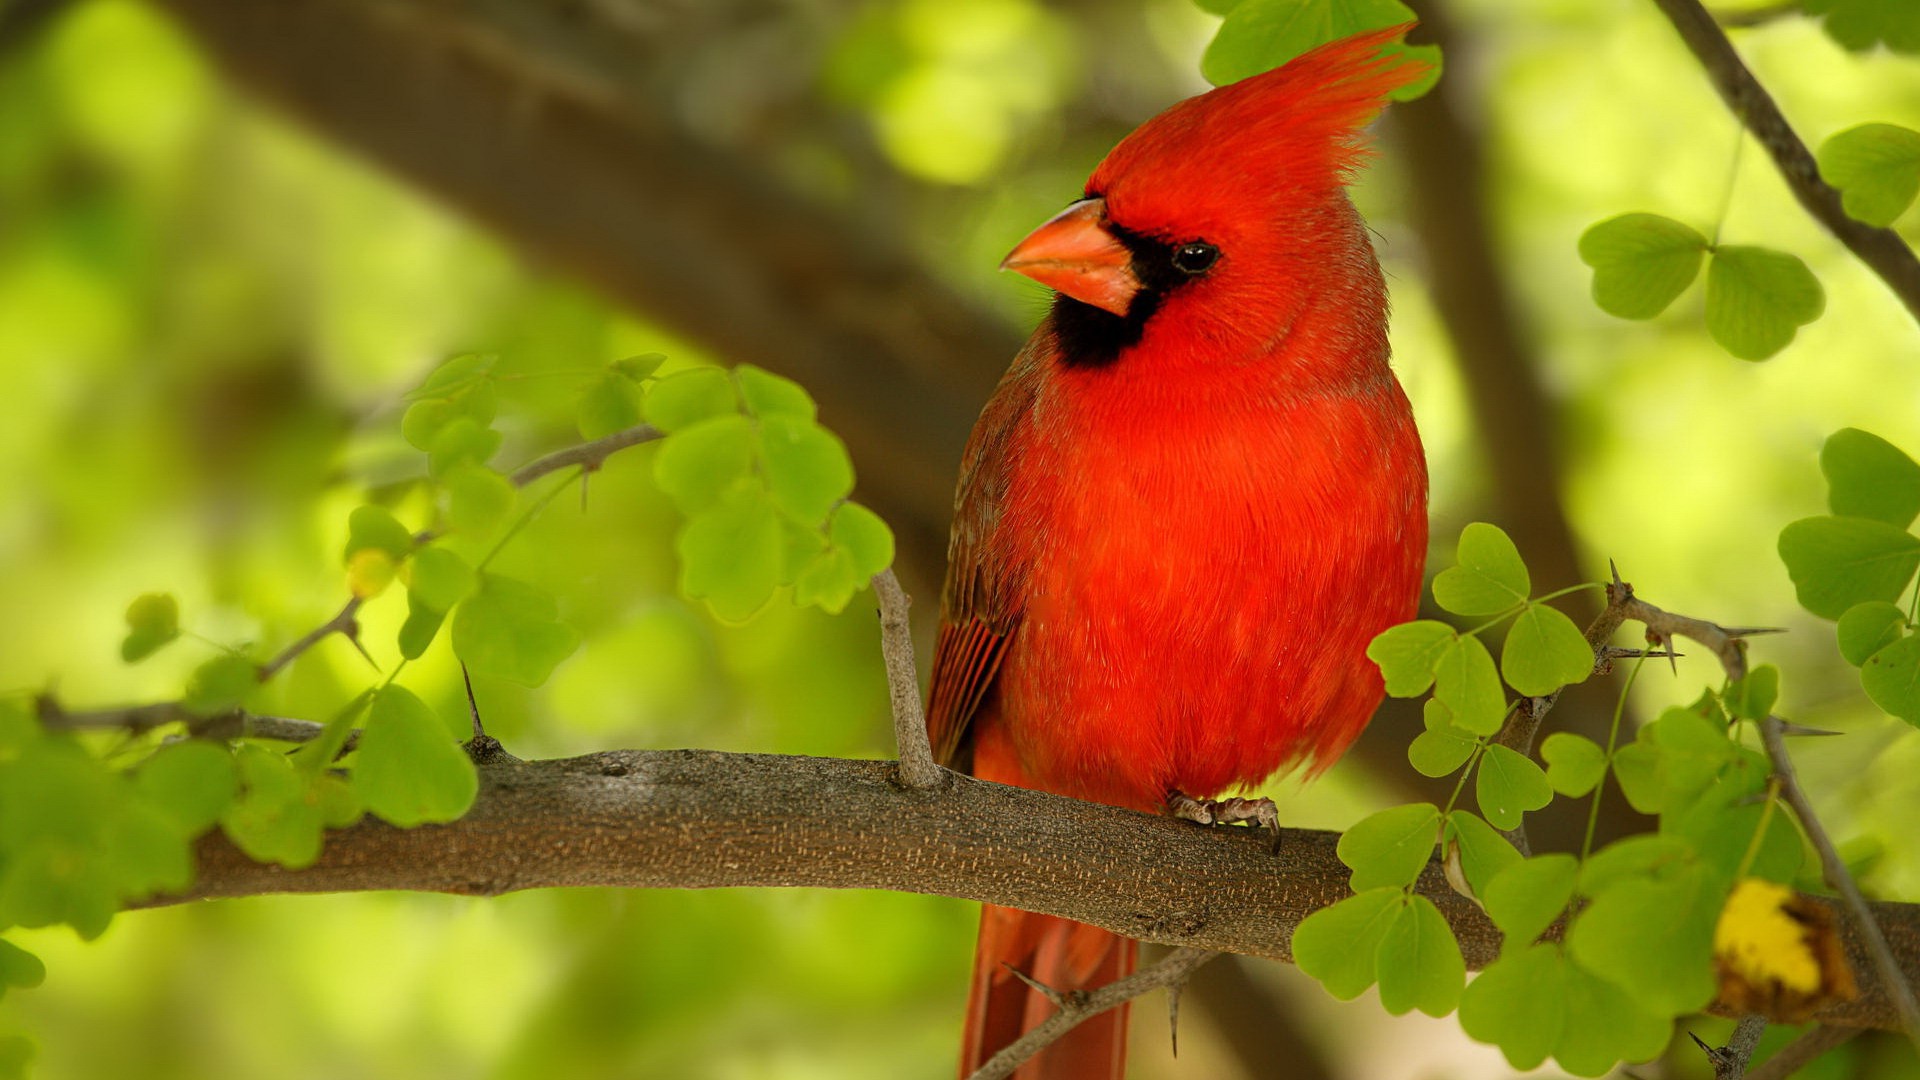 Red Bird HD 1080p Wallpaper Source